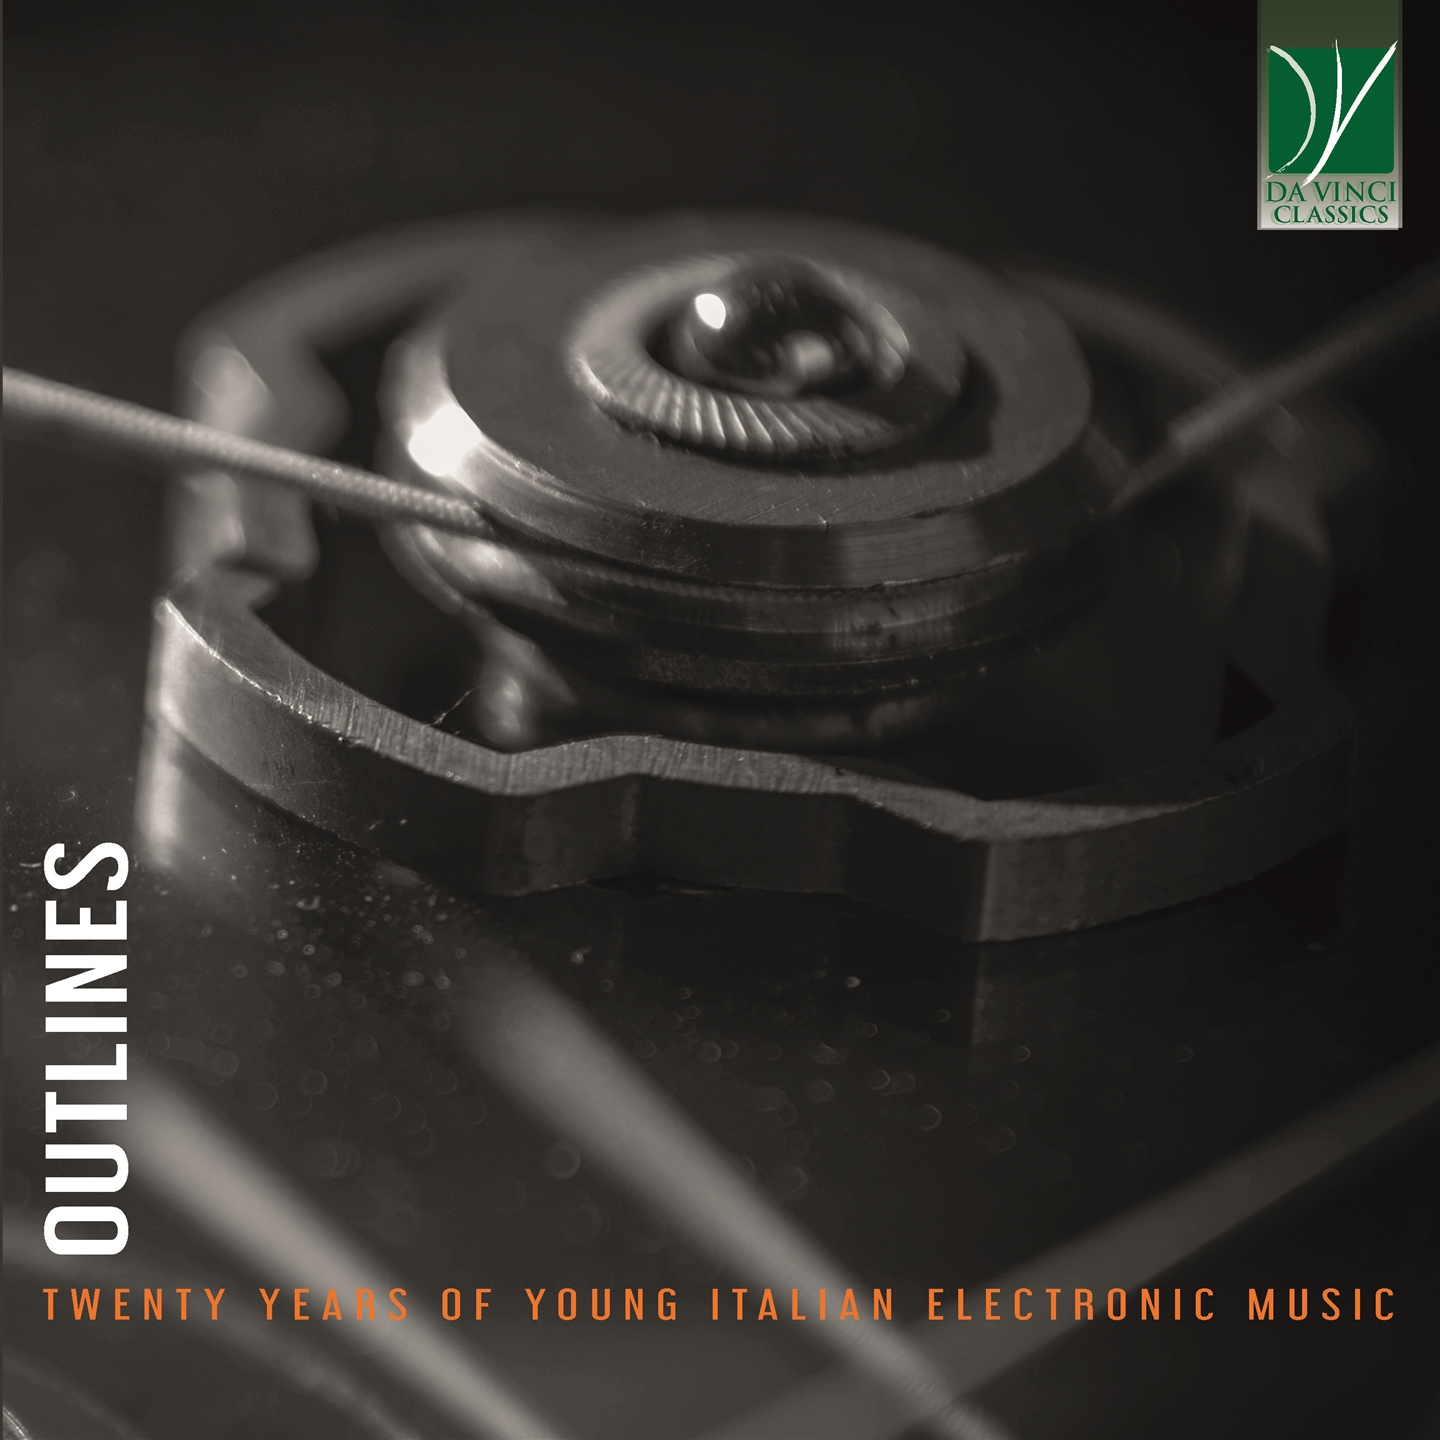 OUTLINES: TWENTY YEARS OF YOUNG ITALIAN ELECTRONIC MUSIC